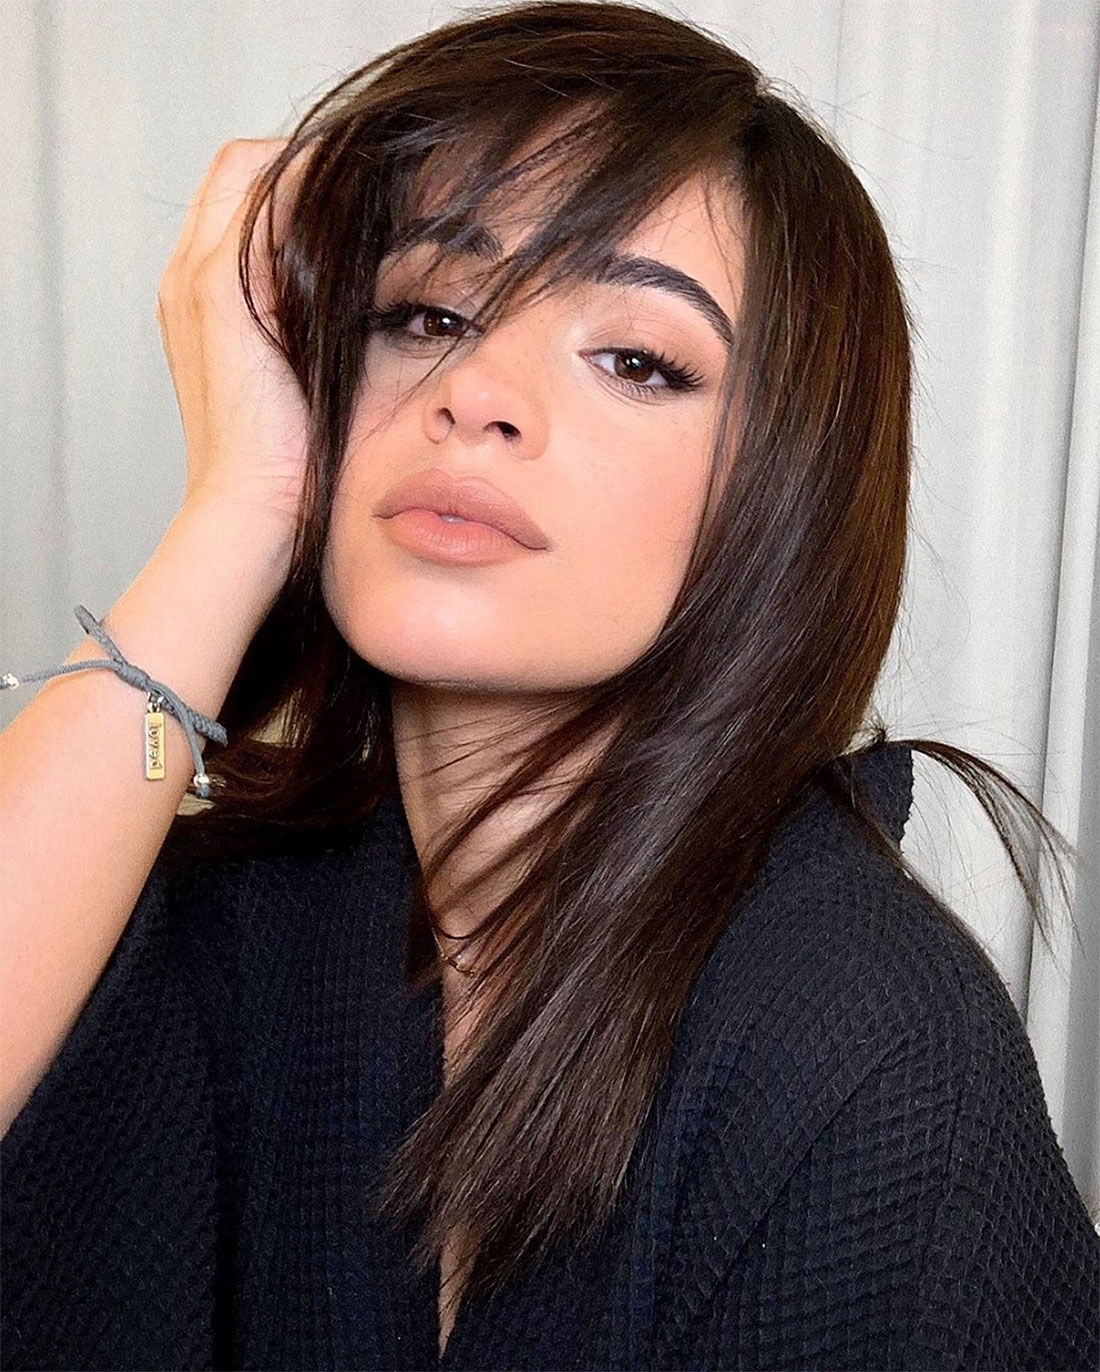 Camila Cabello Cuts Her Hair Shorter intended for Camila Cabello Hair Cut